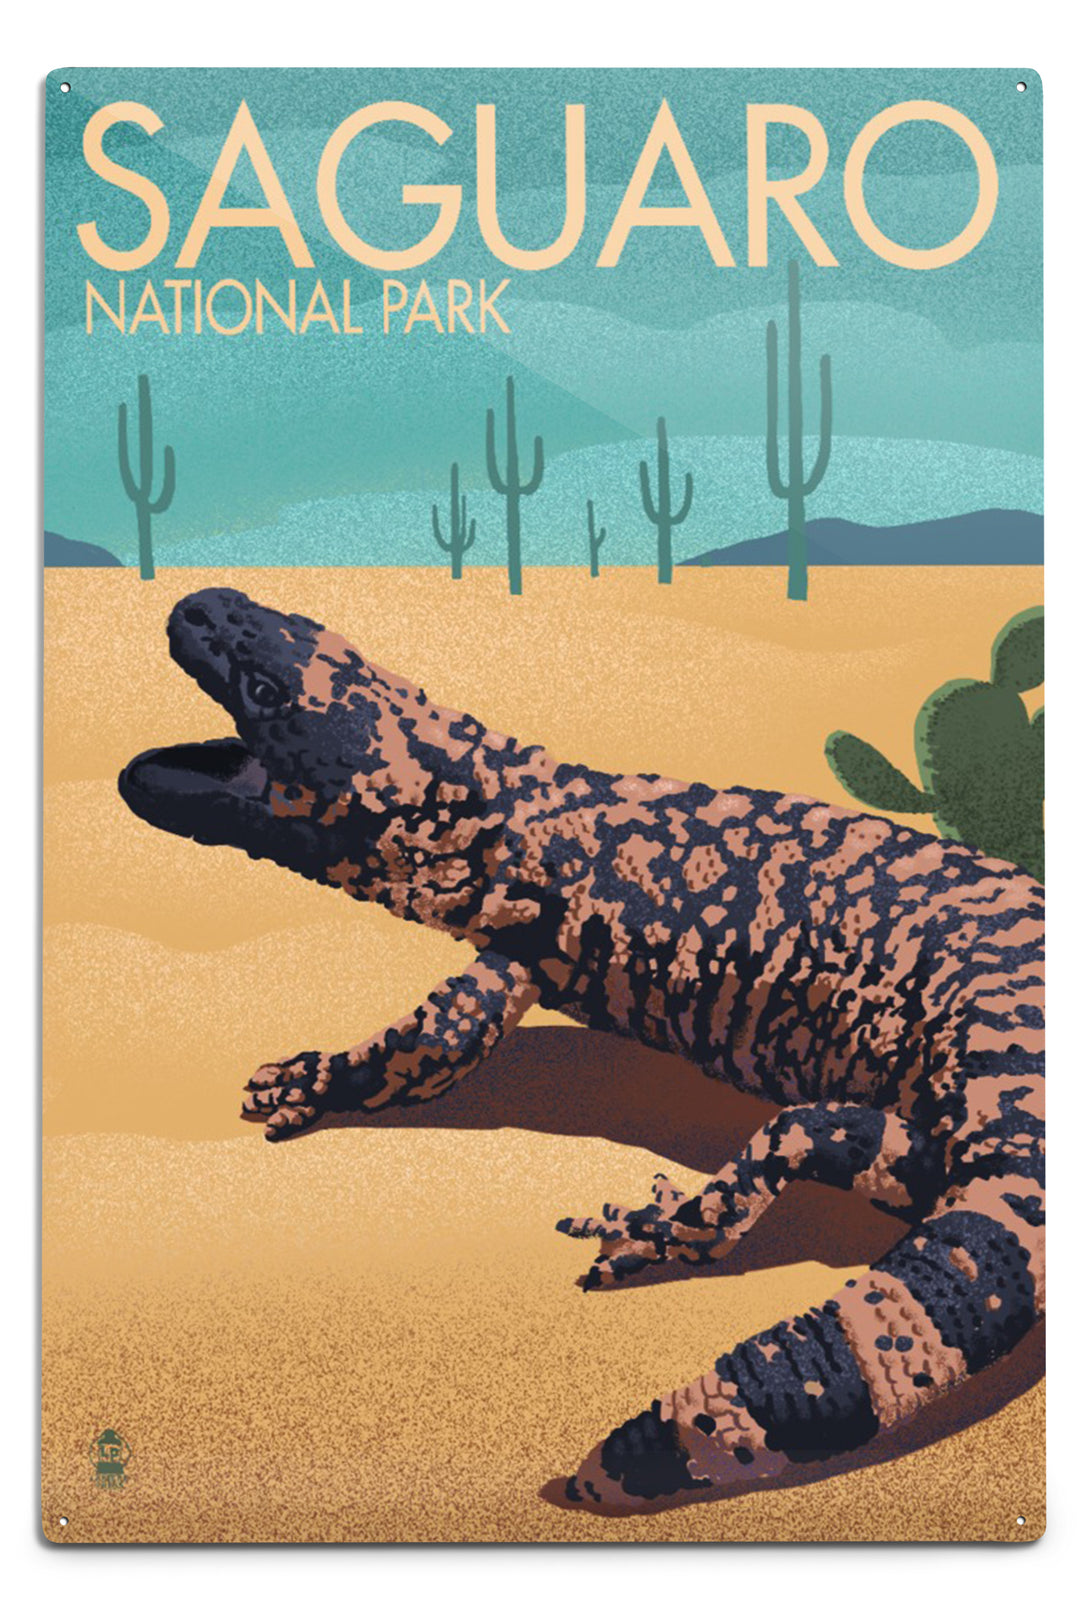 Saguaro National Park, Arizona, Gila Monster and Cactus, Lithograph, Metal Signs